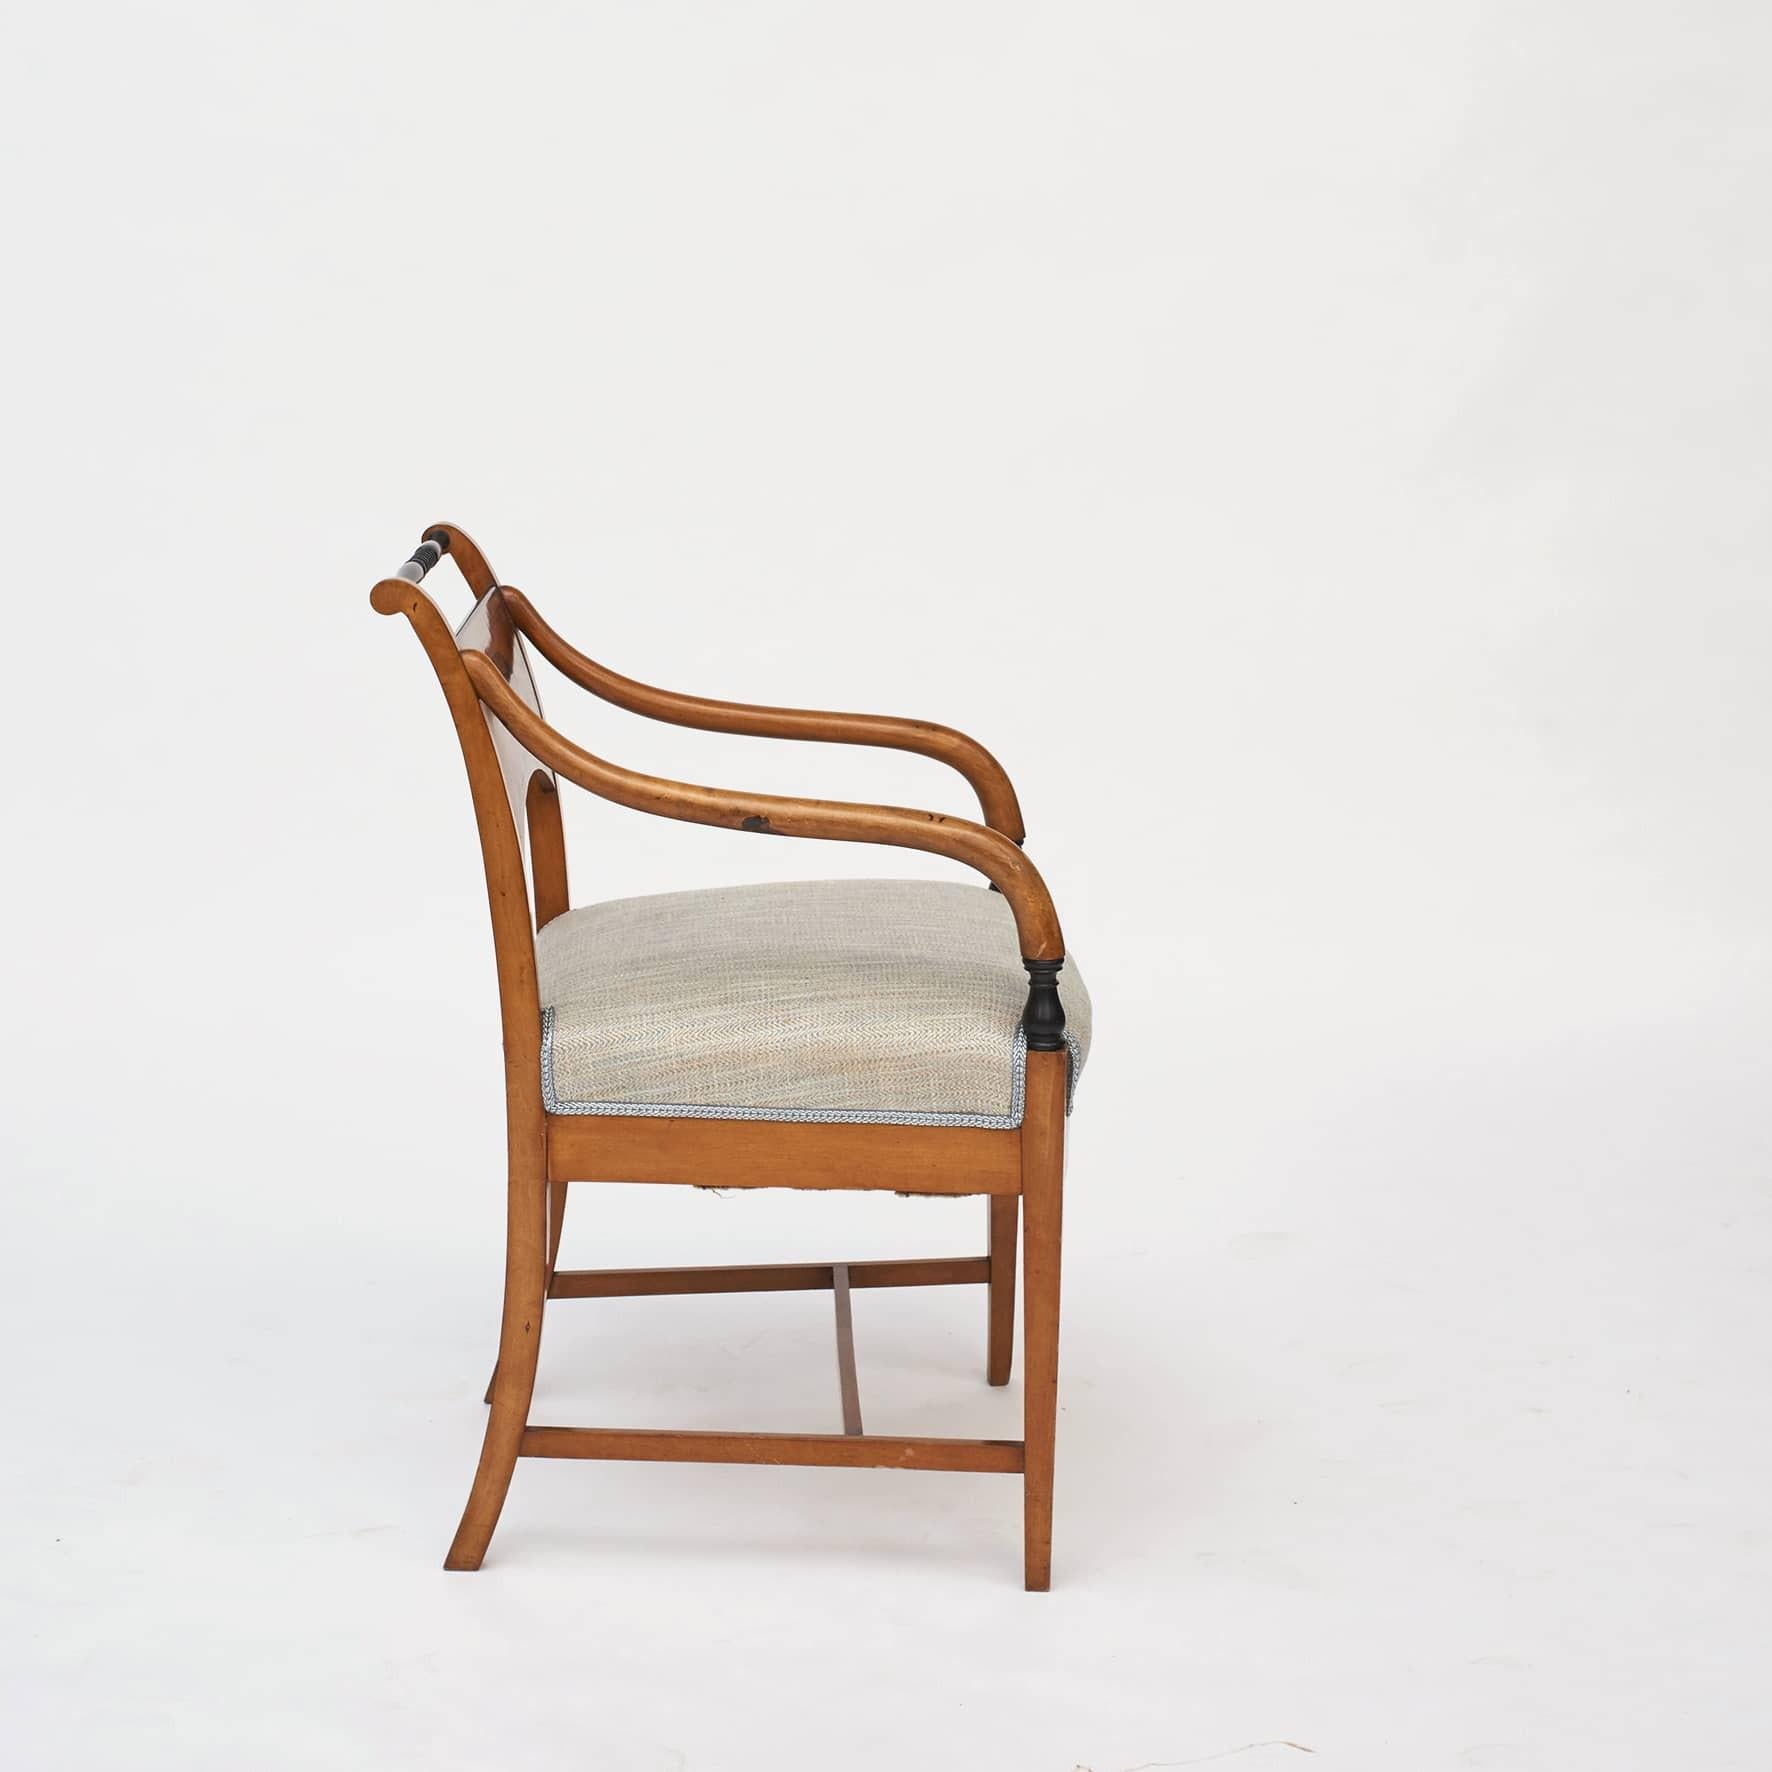 Ein Paar elegante Sessel aus dem späten Kaiserreich.

Gefertigt aus Birkenholz mit Intarsien in Form von Vasen auf der Rückenlehne. Feine Linienintarsien auf Rückenlehne und Schürze.
Die Oberseiten der hinteren Stuhlschienen aus ebonisiertem